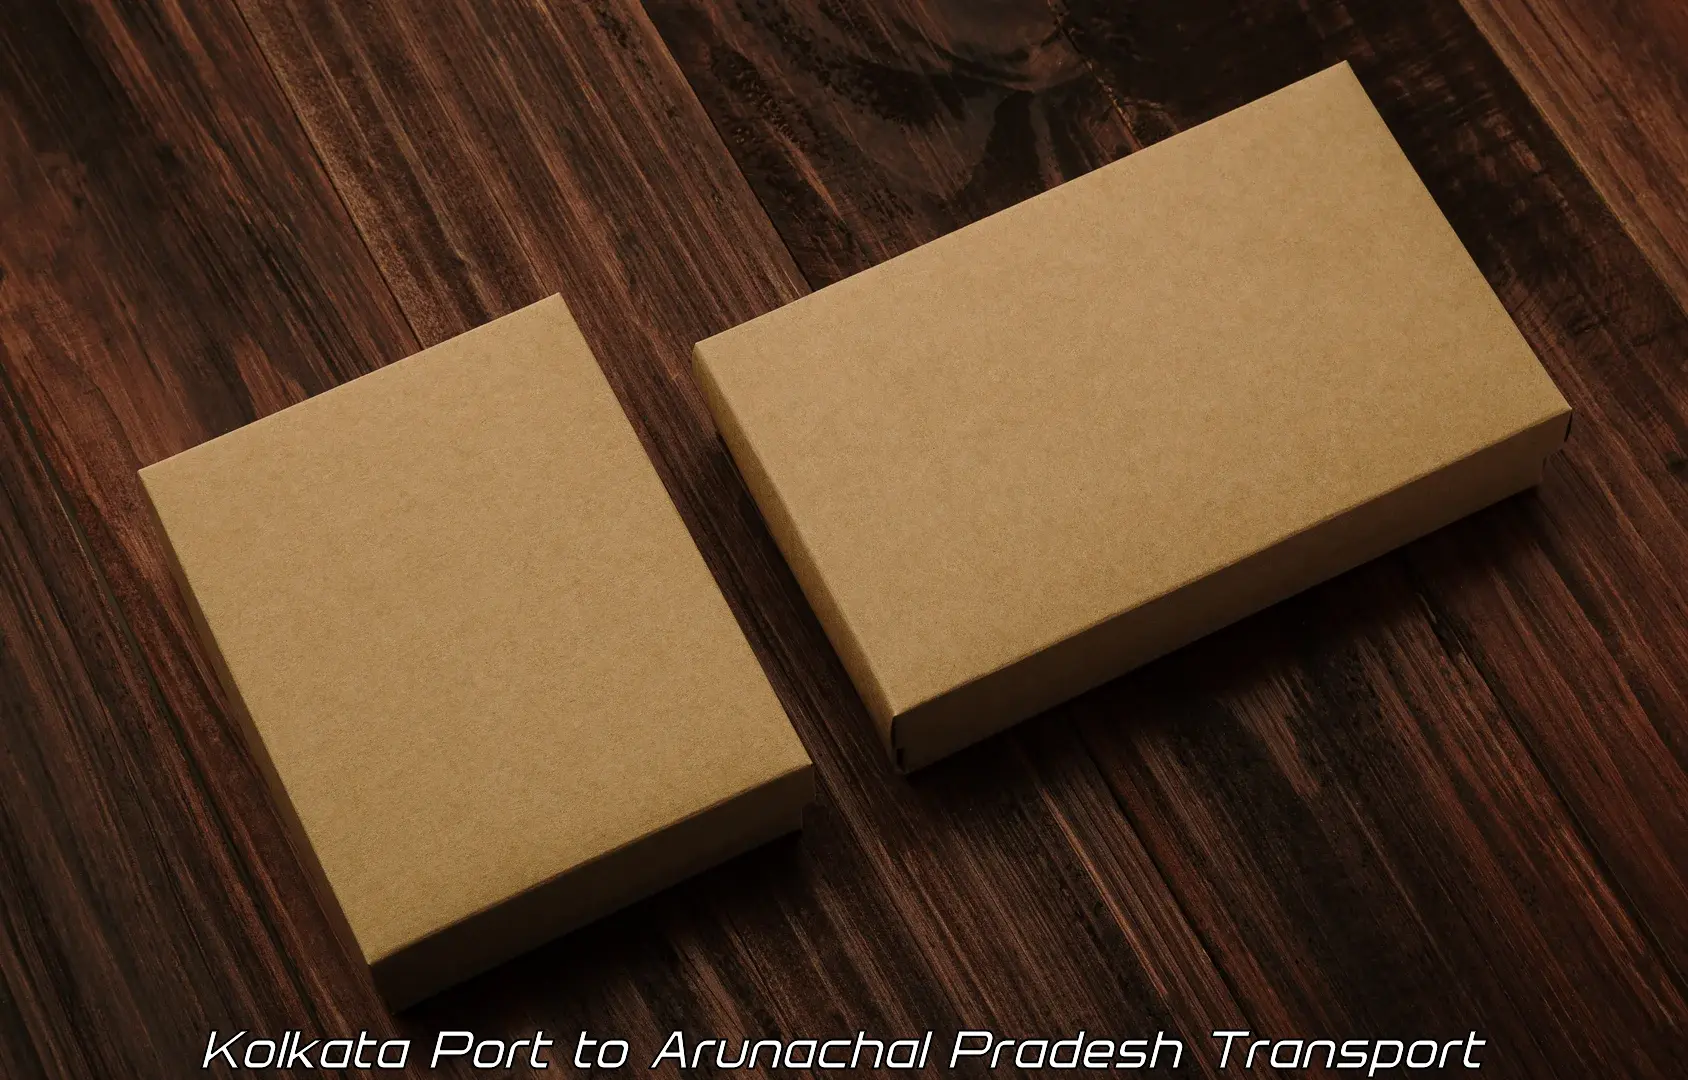 Vehicle parcel service Kolkata Port to Dibang Valley